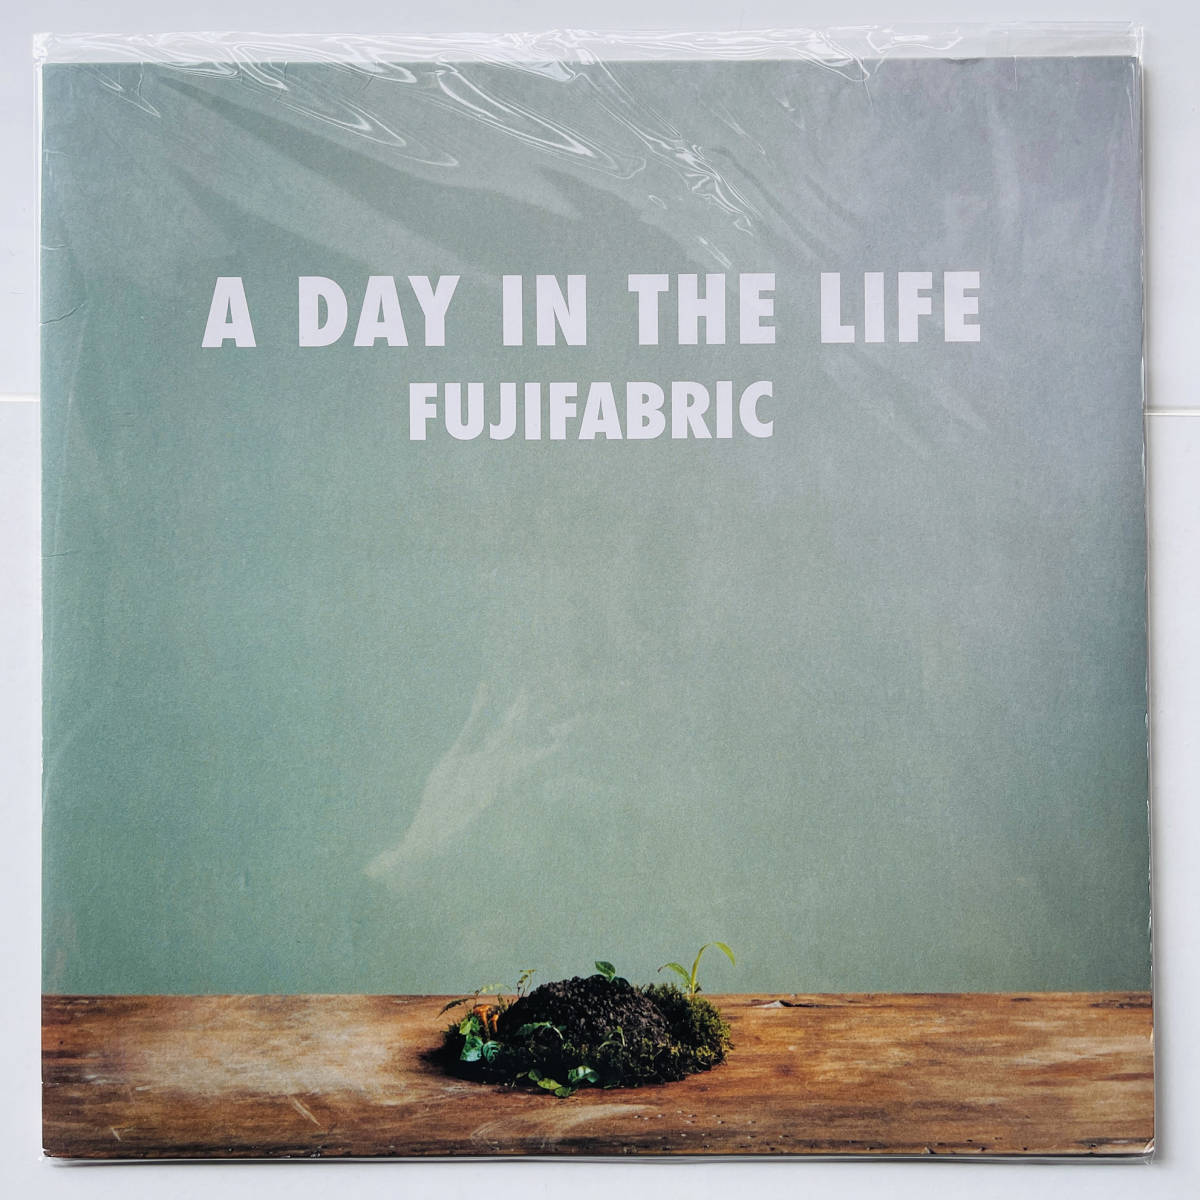 少数プレス限定盤 レコード〔 フジファブリック A Day In The Life 〕Fujifabric